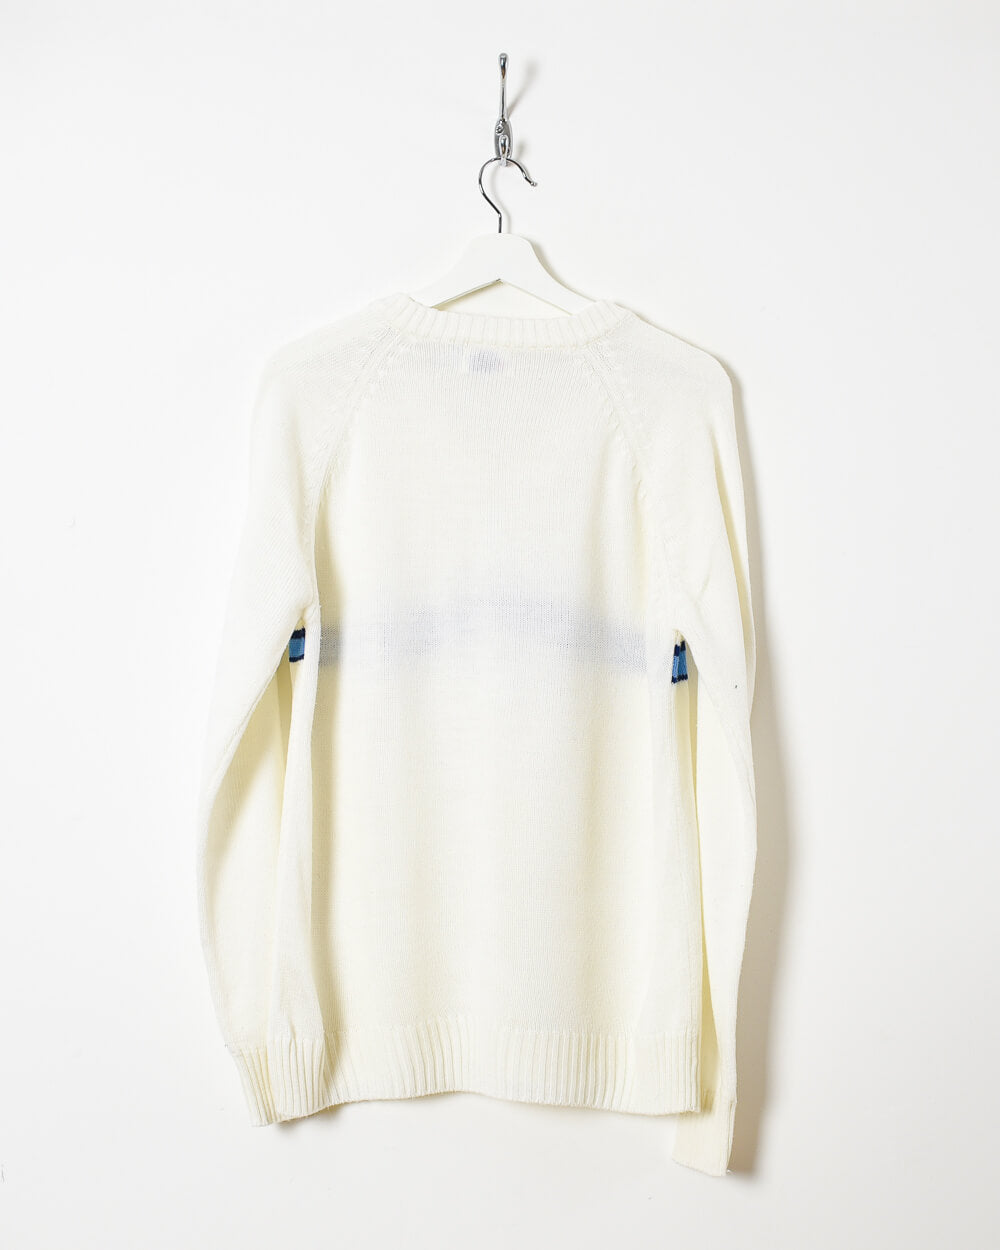 White Nike 70s Knitted Sweatshirt - Medium